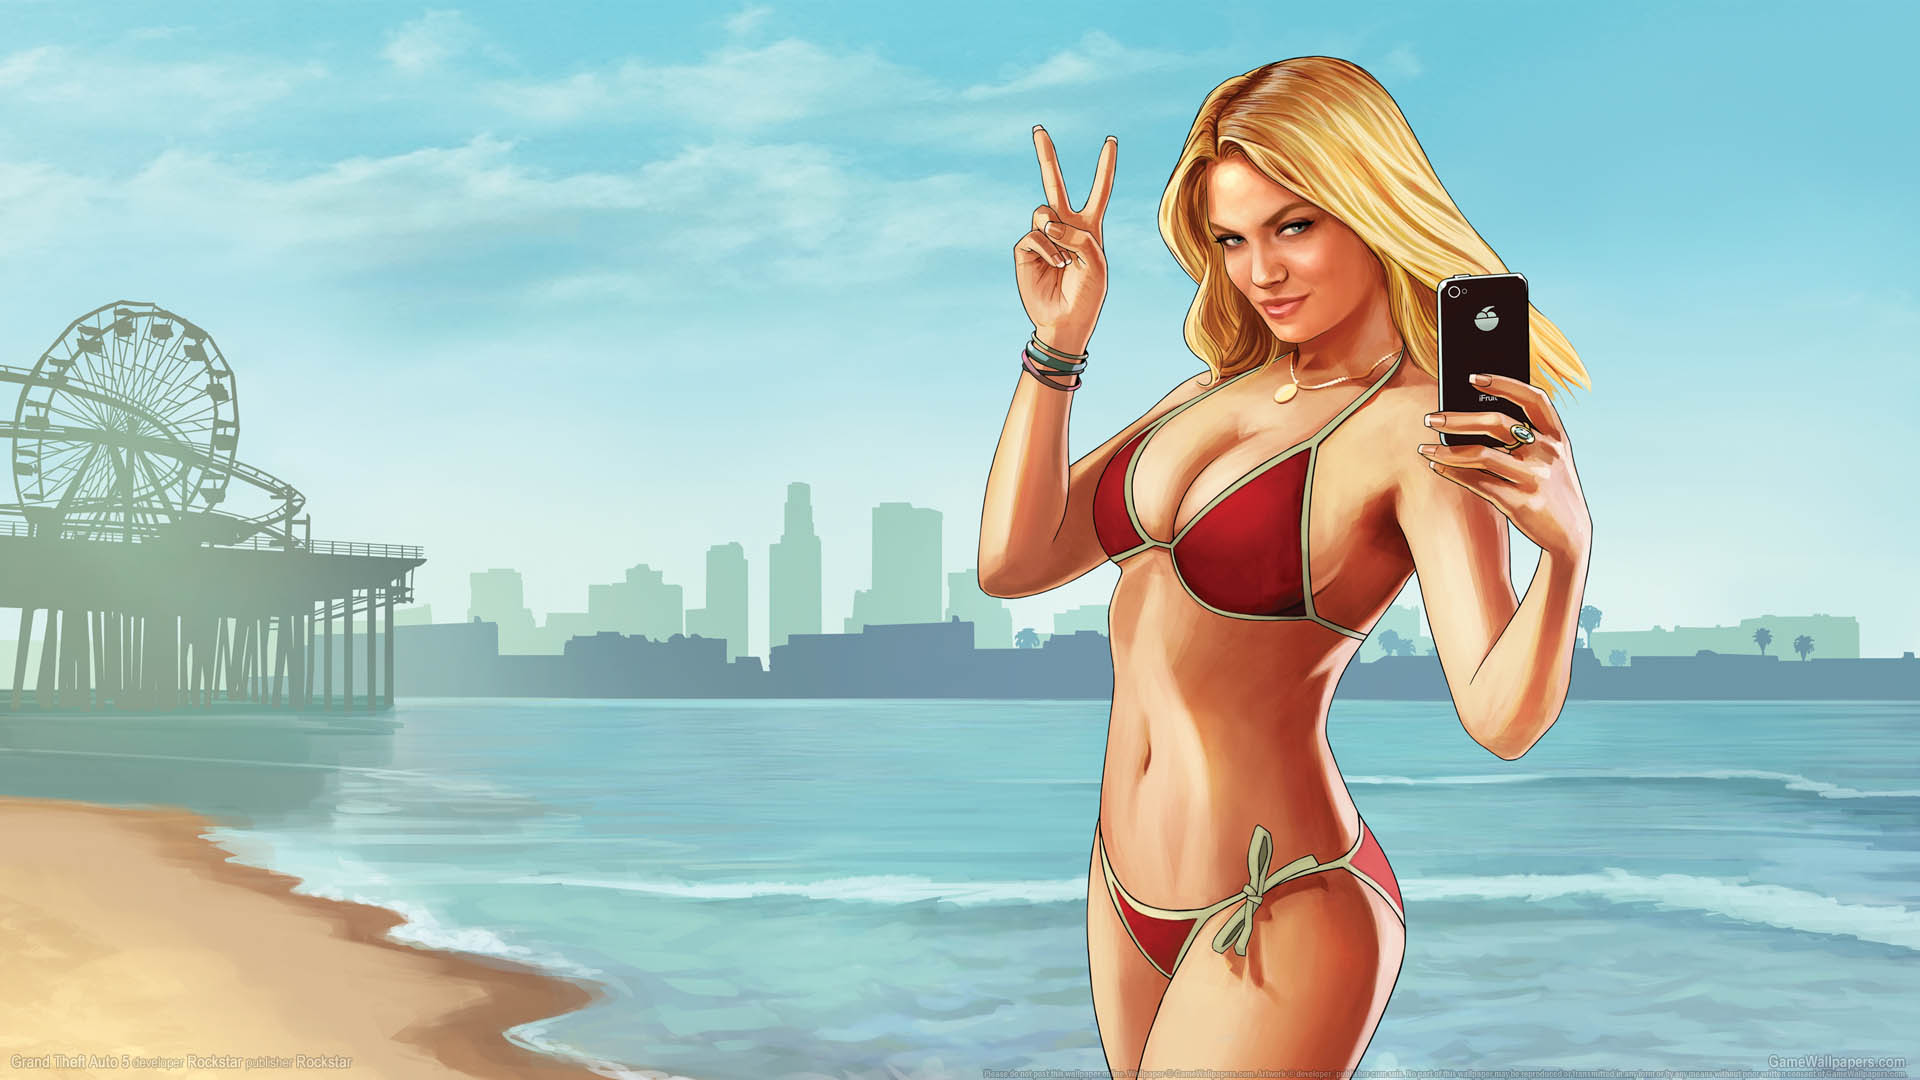 Grand Theft Auto 5 fond d'cran 01 1920x1080